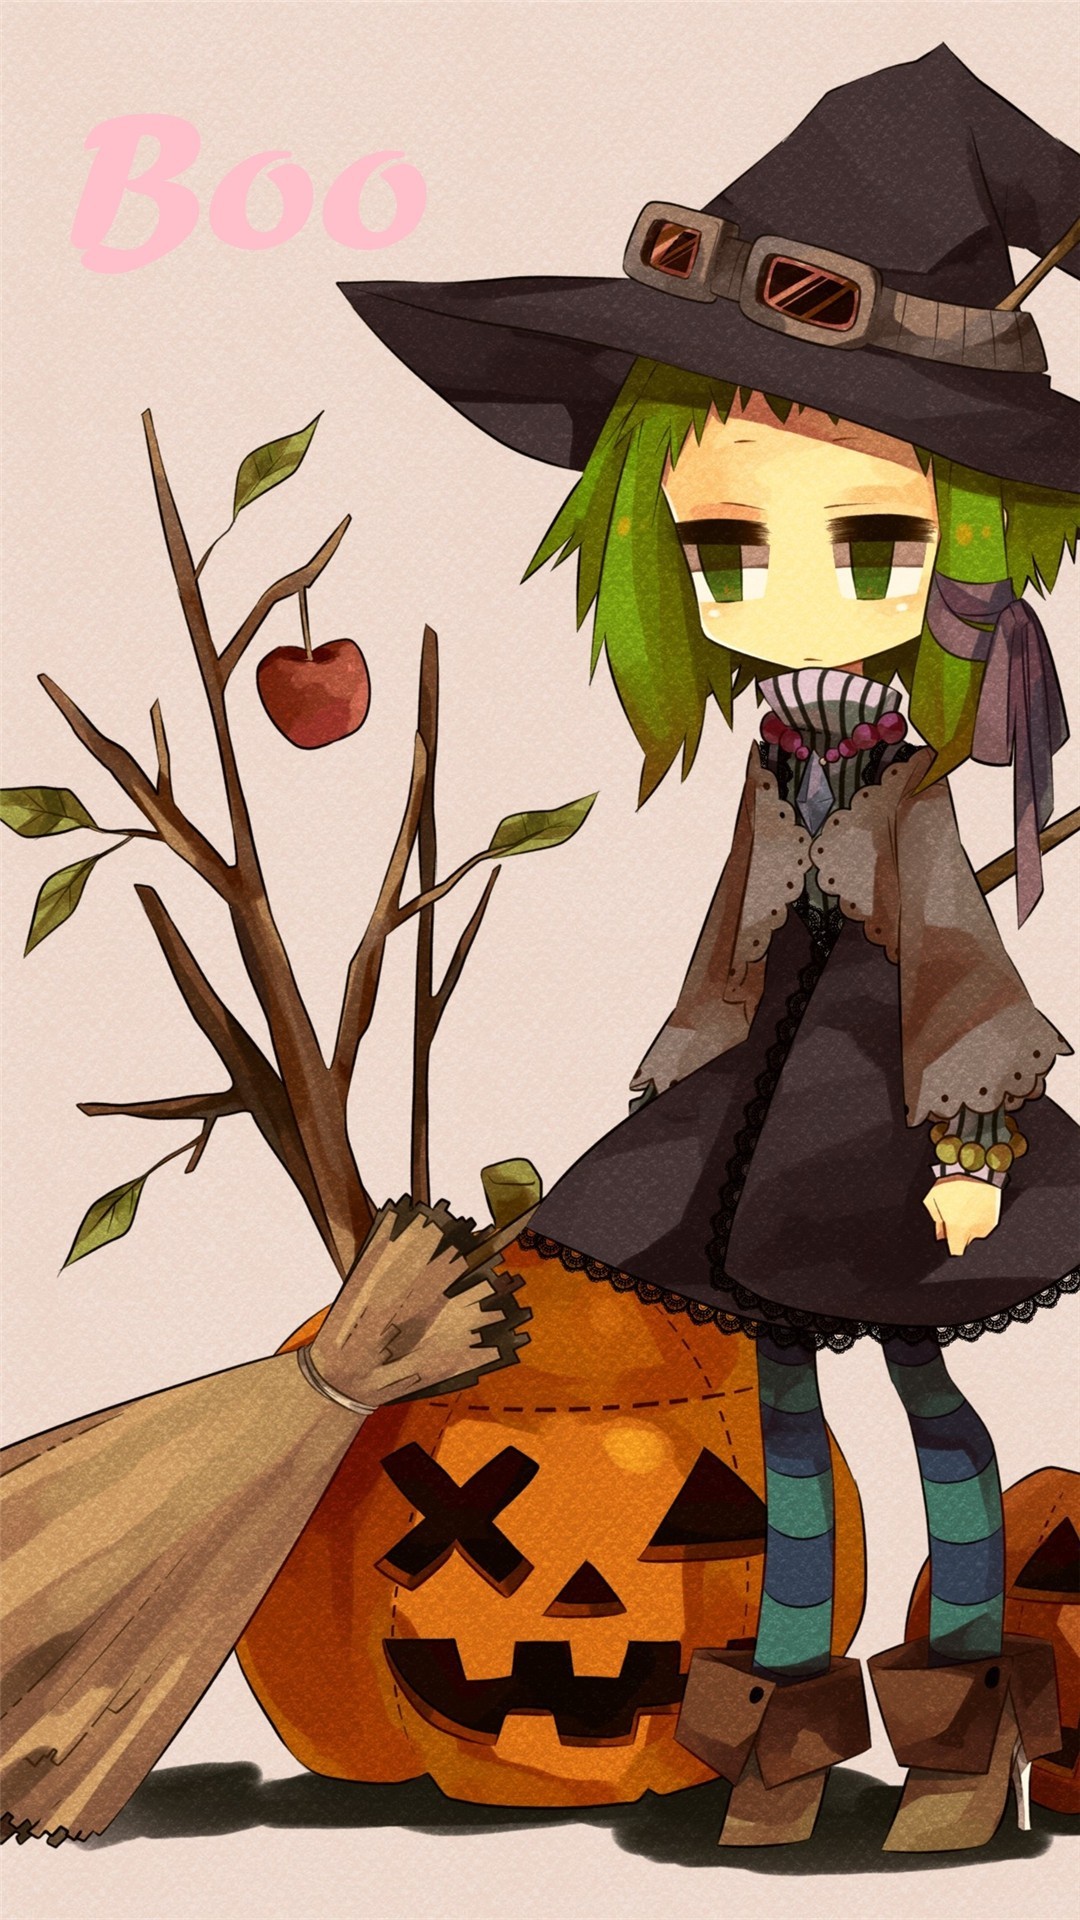 2014 Halloween BOO iPhone 6 plus wallpapers – girl, witch hat, broom,  pumpkin